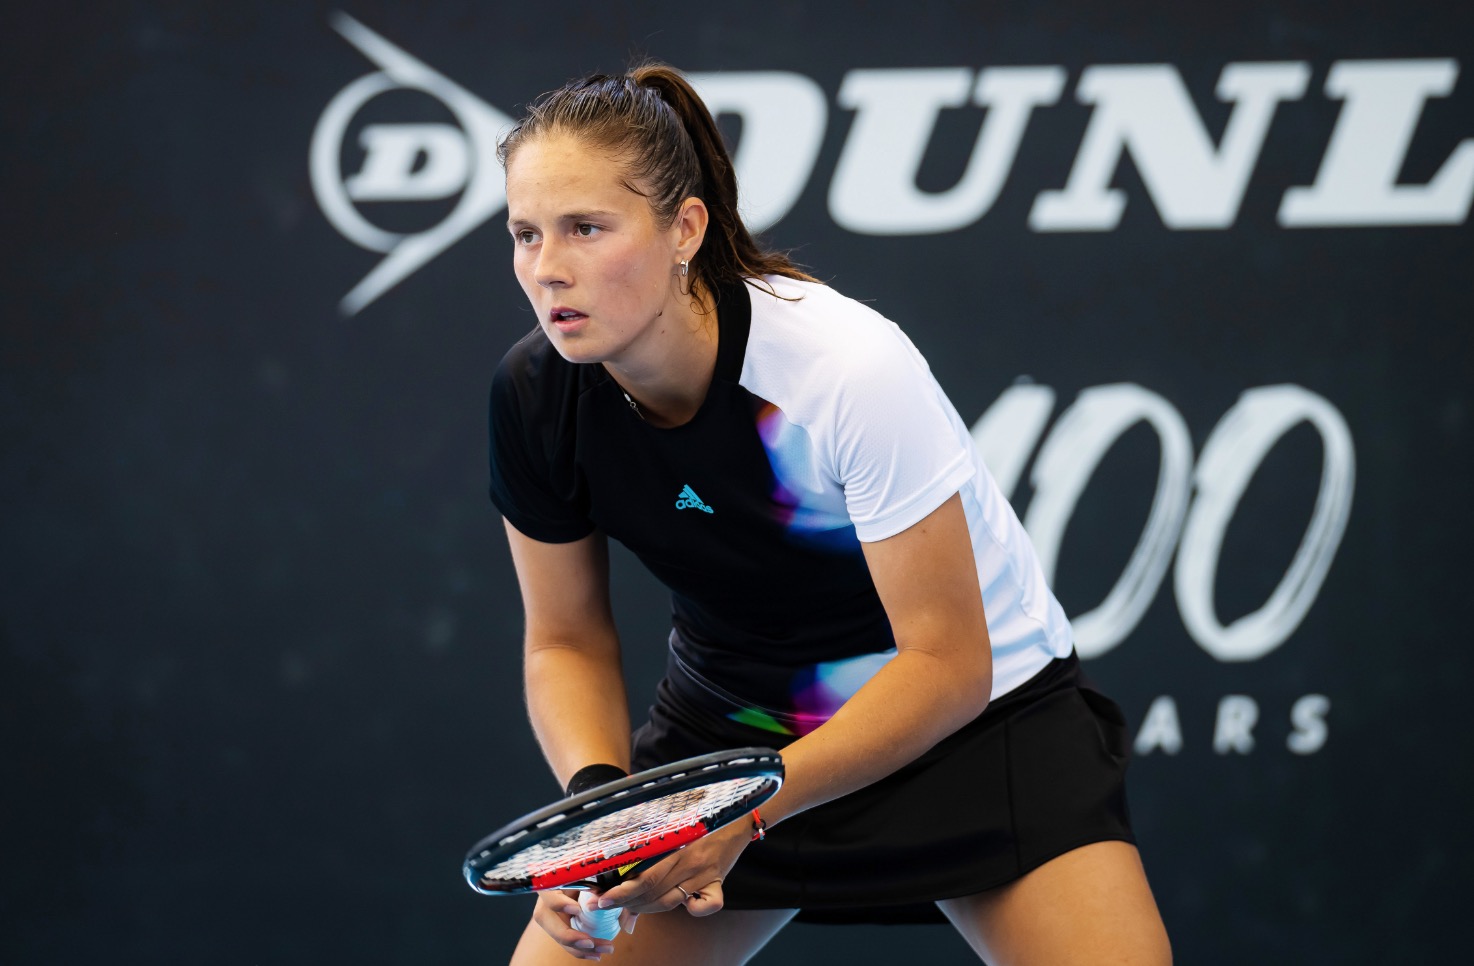 Грачева обыграла Касаткину в третьем круге теннисного турнира в Индиан-Уэллсе